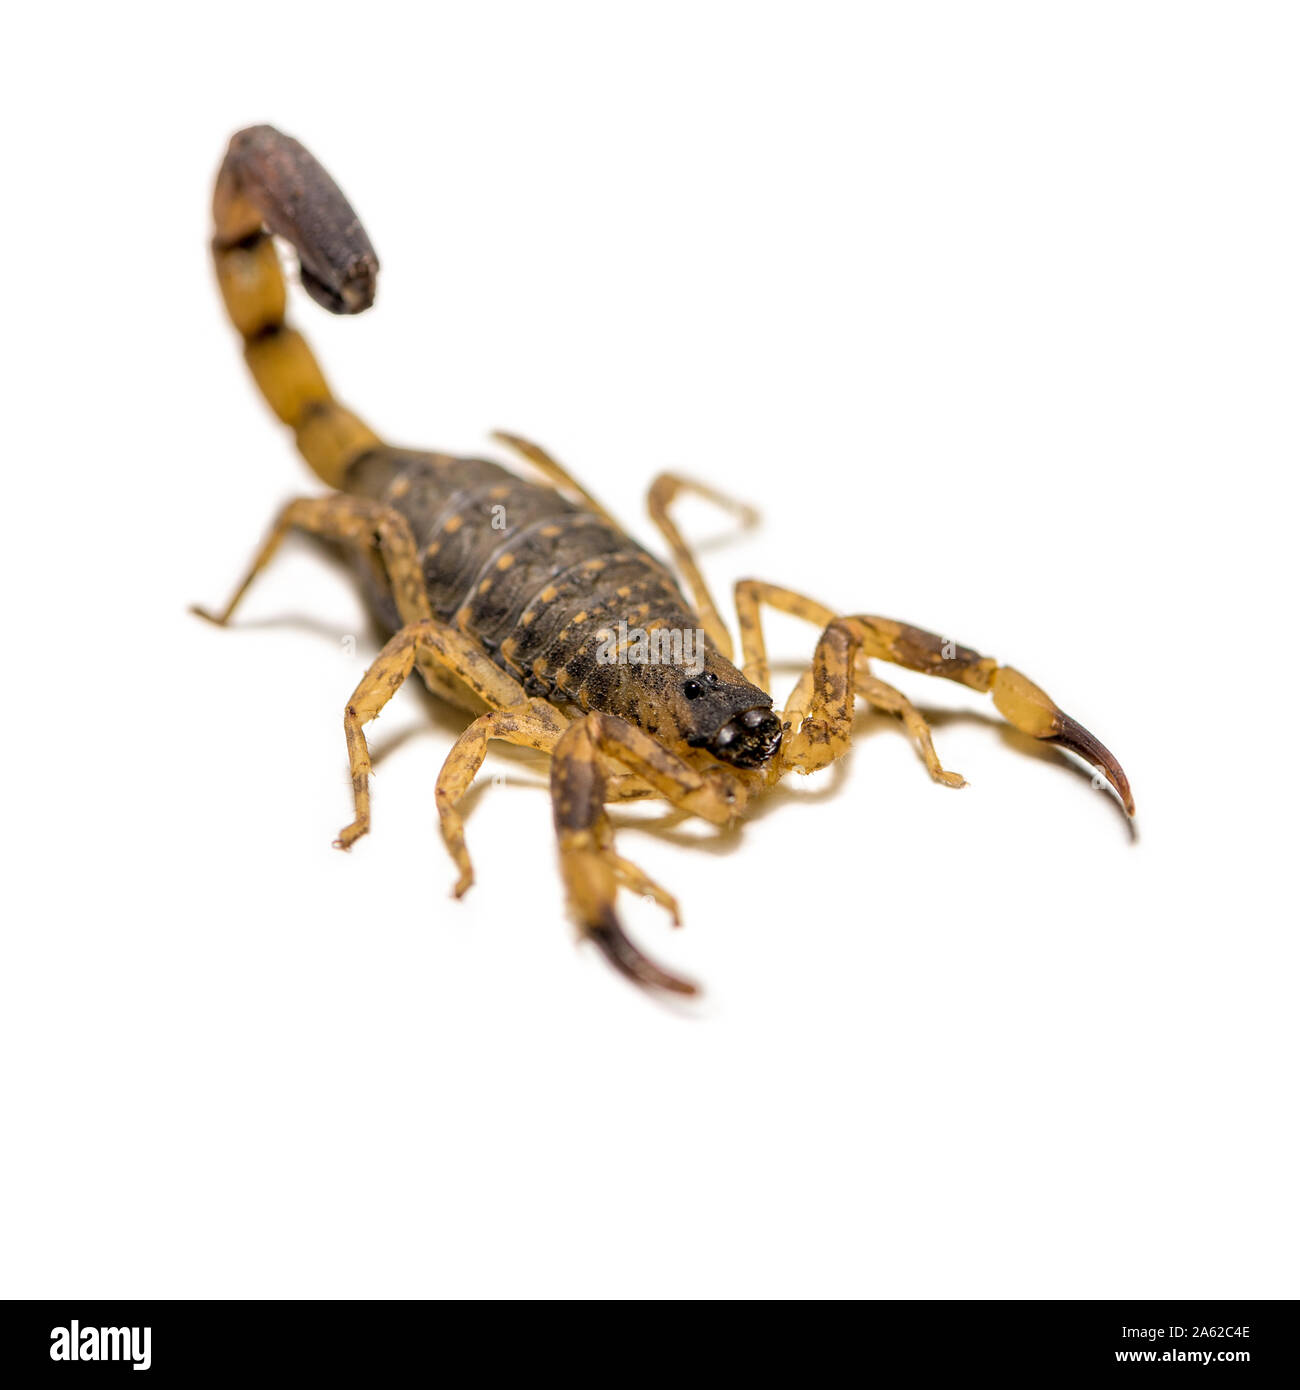 Nahaufnahme Makro gelb oder braun Scorpion vor auf weißem Hintergrund, kleines Tier ist giftig Reptil in der Schwanz für sting Beute zu jagen oder selbst pro Stockfoto